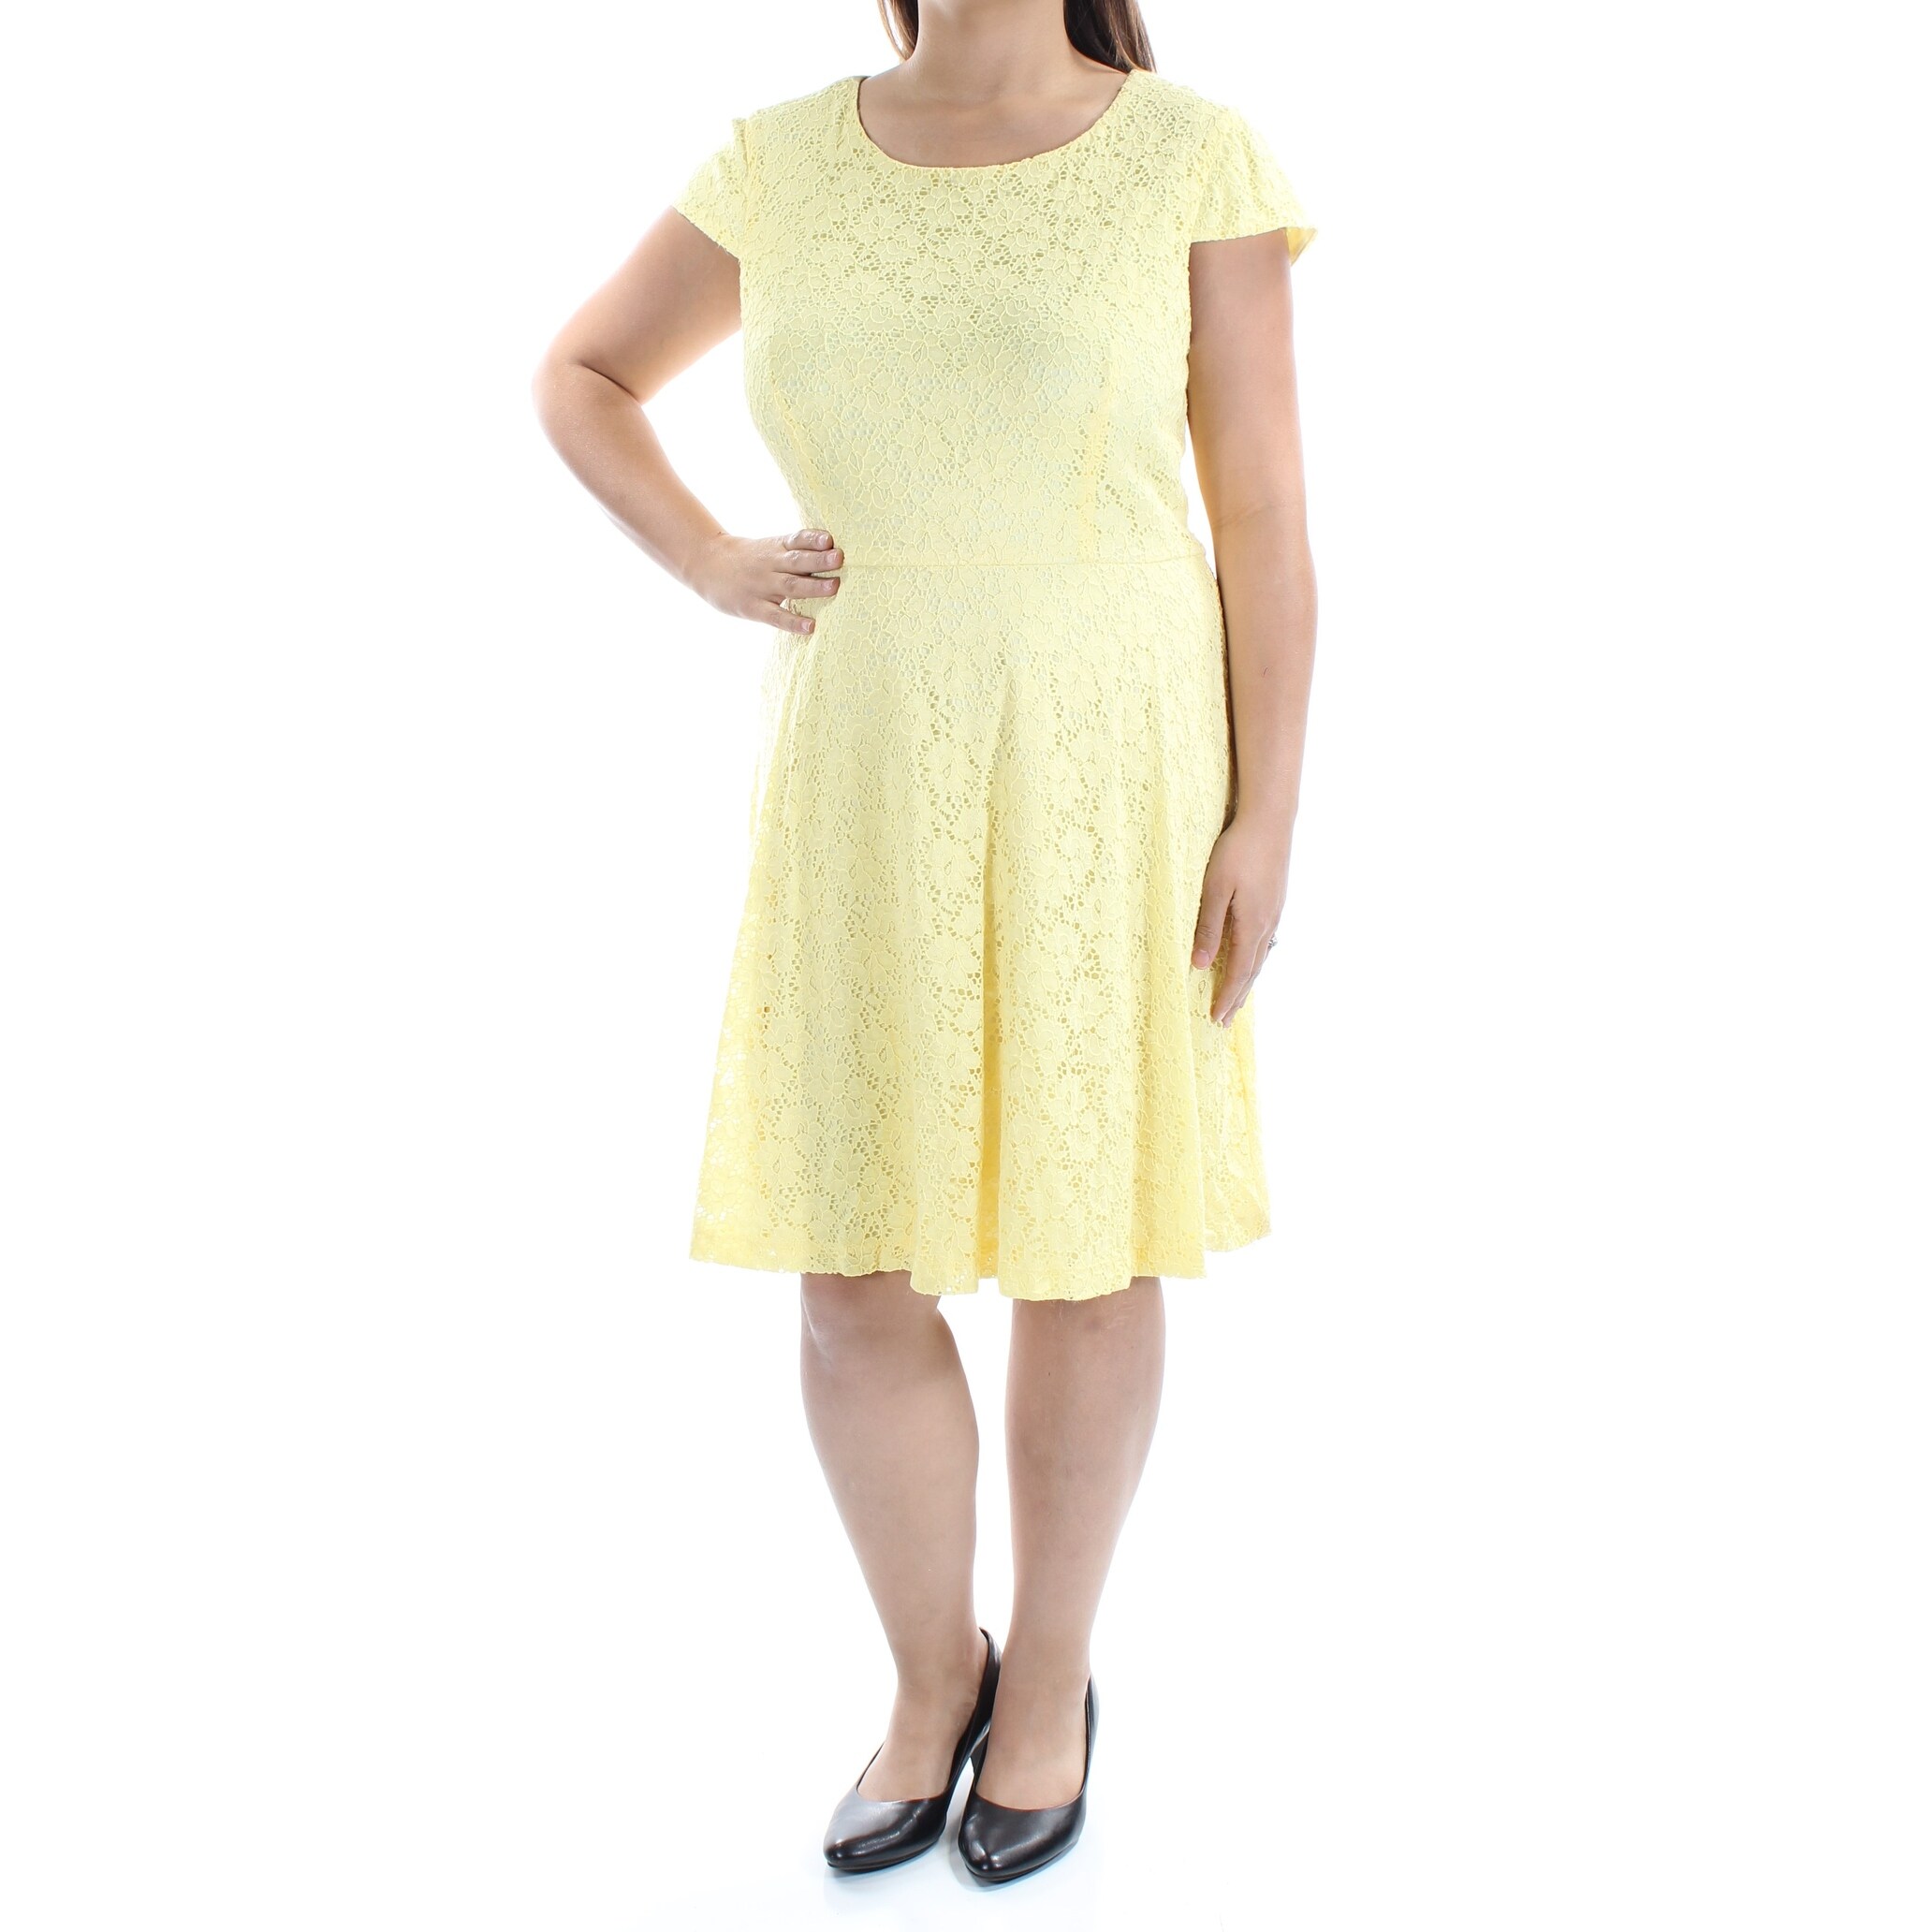 yellow dress size 18